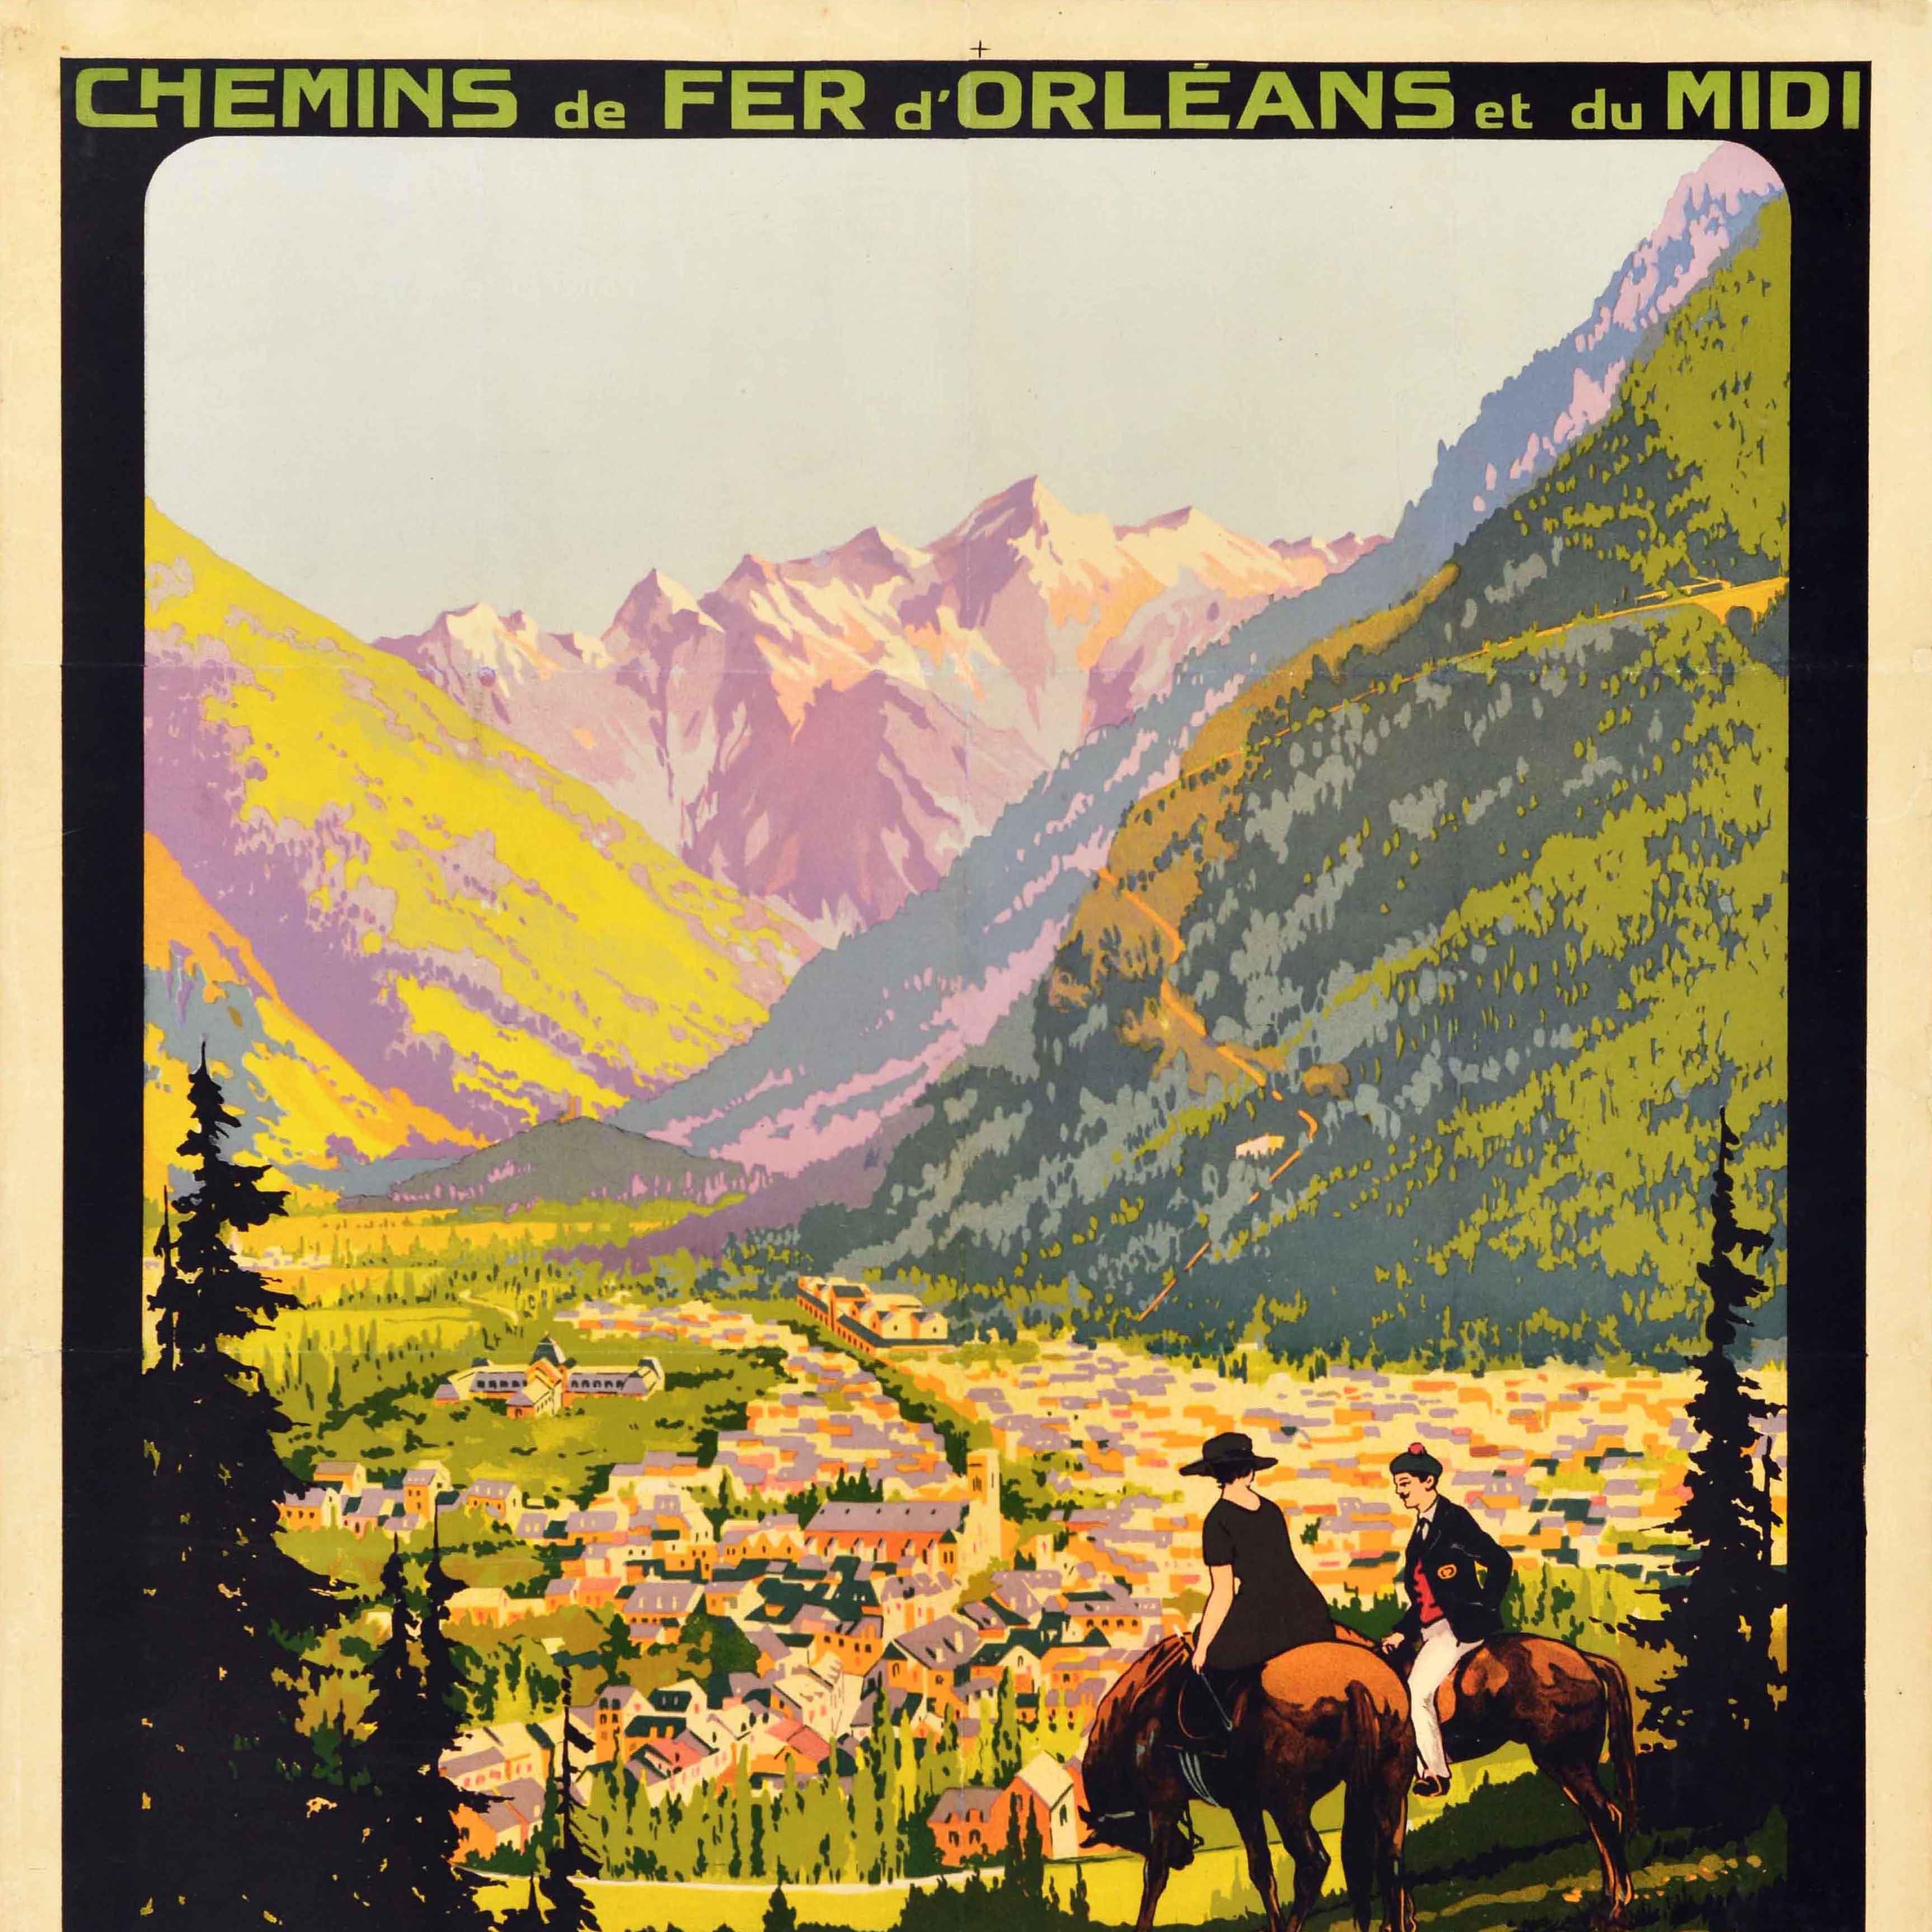 Affiche de voyage ferroviaire ancienne originale réalisée par l'affichiste français Roger Soubie (1898-1984) pour les Chemins de Fer d'Orleans et du Midi Luchon 629m d'altitude Reine des Pyrénées / Queen of the Pyrenees. Vue panoramique colorée